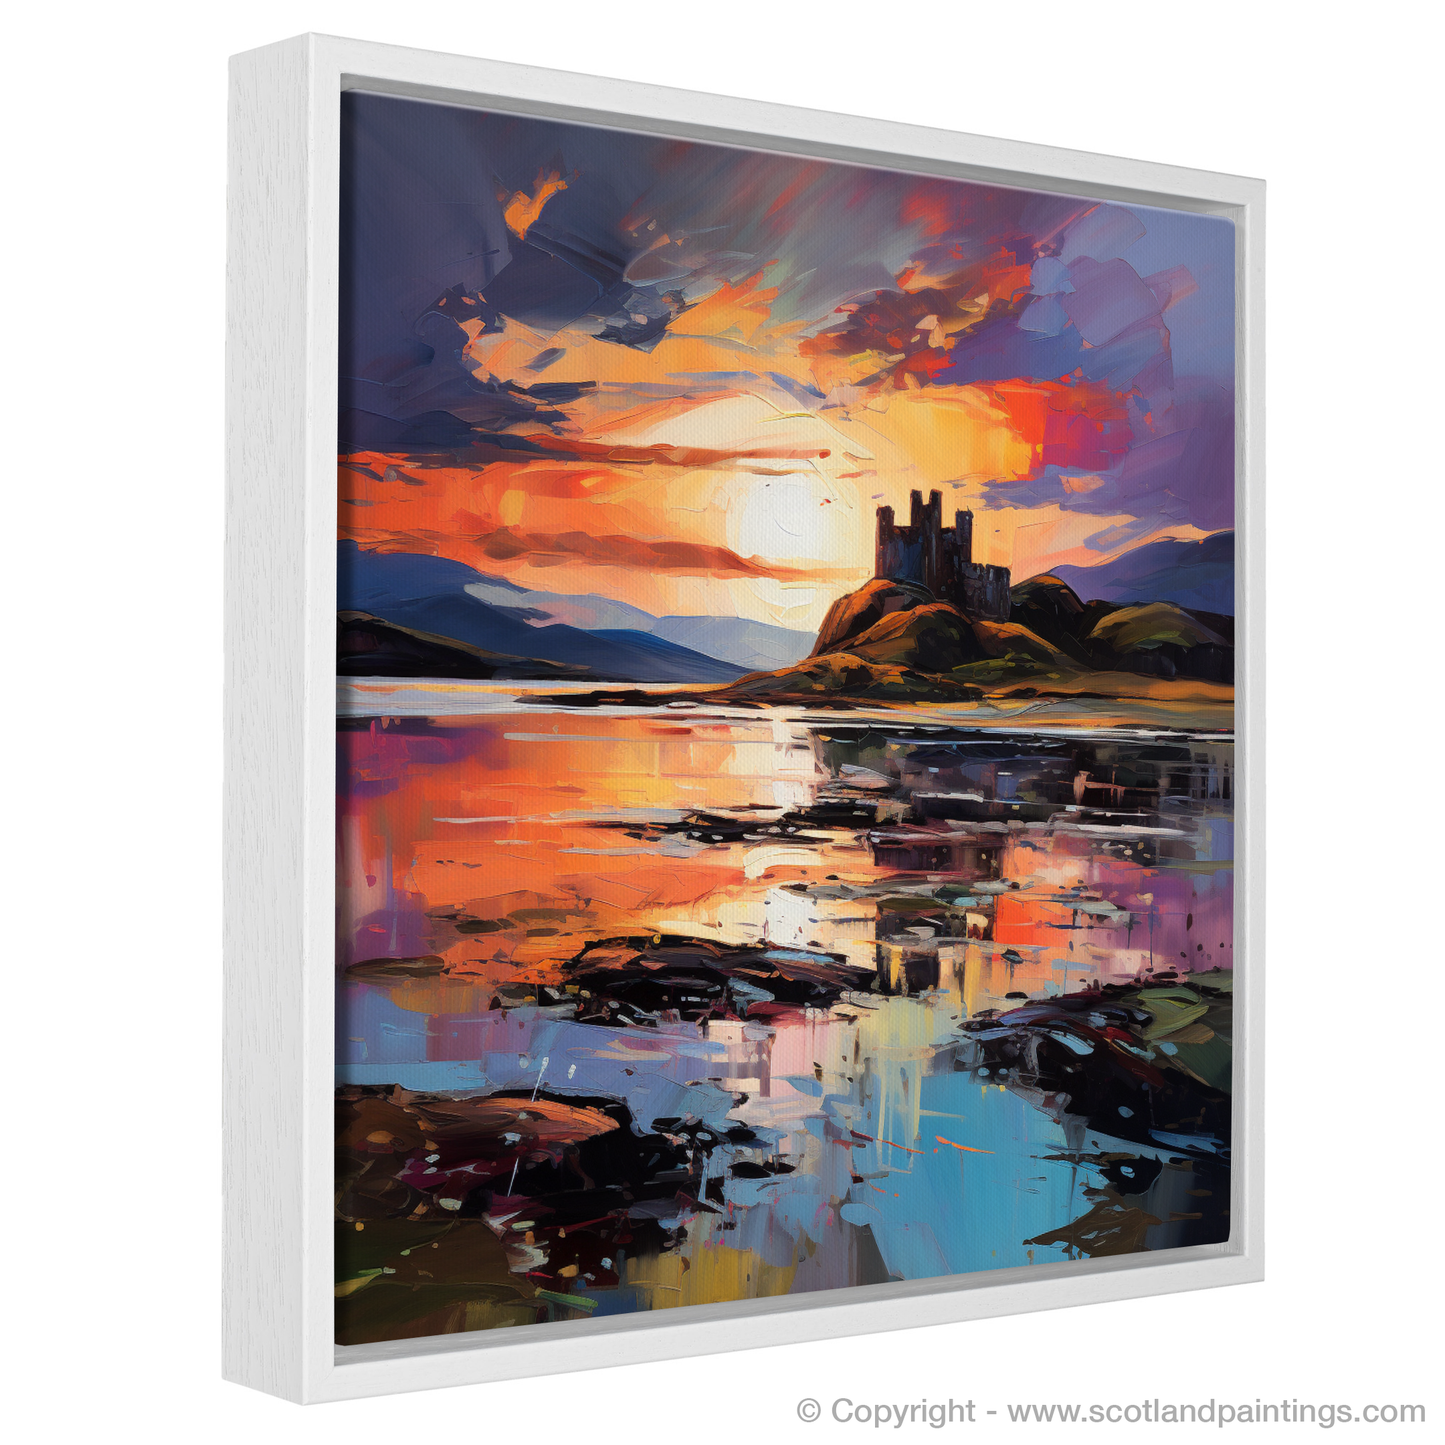 Painting and Art Print of Castle Stalker Bay at sunset entitled "Sunset Embrace over Castle Stalker Bay".